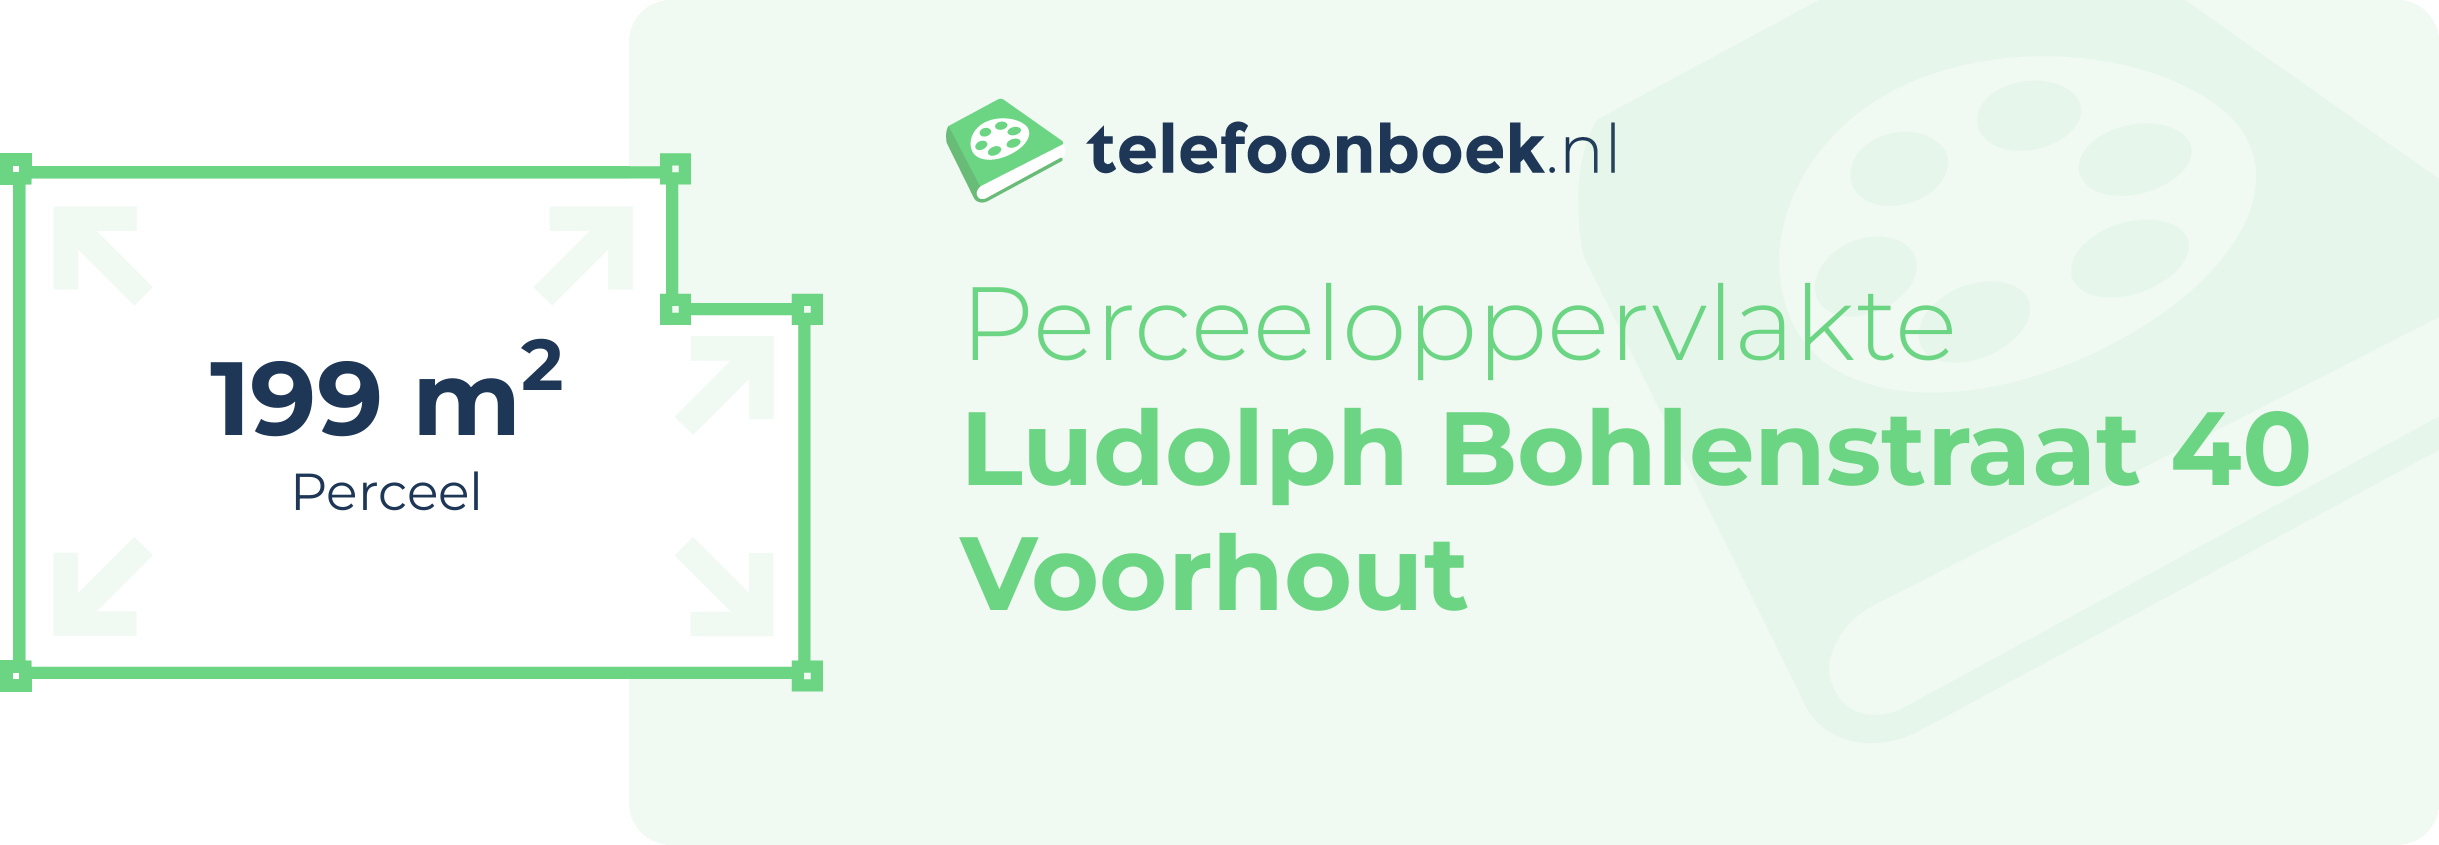 Perceeloppervlakte Ludolph Bohlenstraat 40 Voorhout